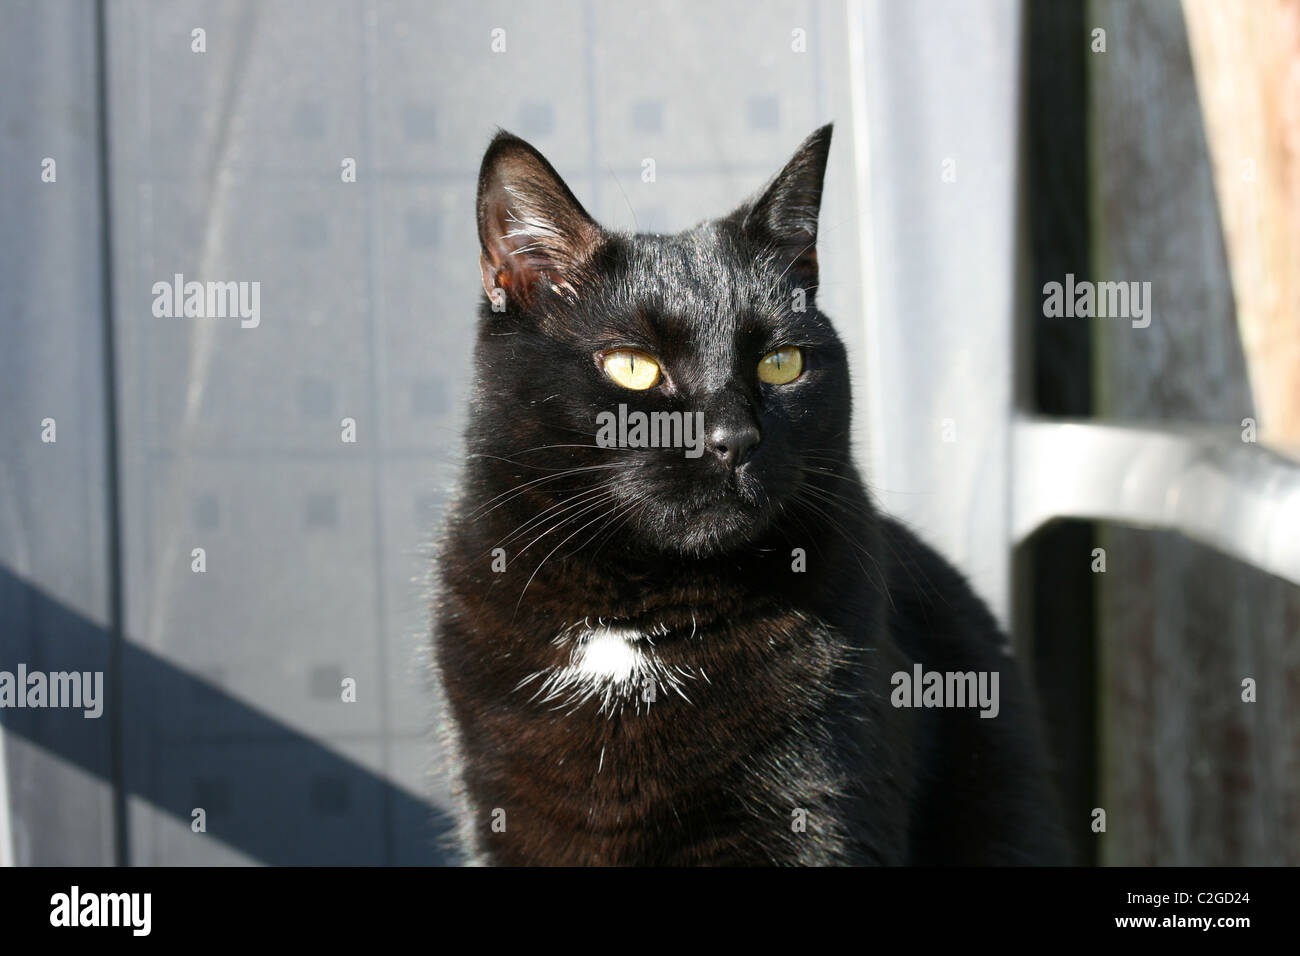 Un chat noir avec une petite tache blanche est assis sur une chaise au soleil Banque D'Images